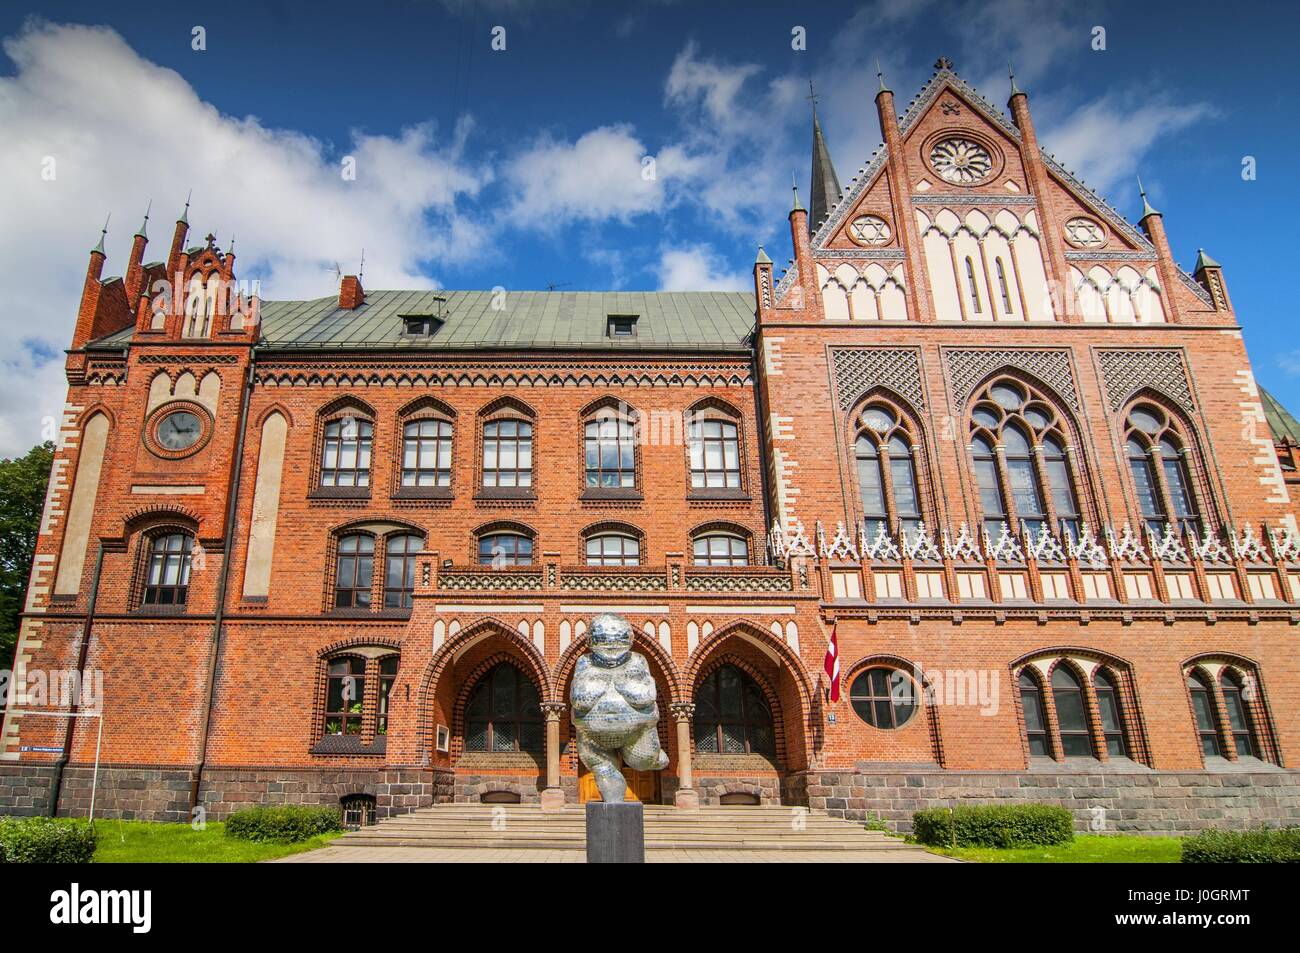 The Academy of Art in Riga, capital of Latvia. Stock Photo